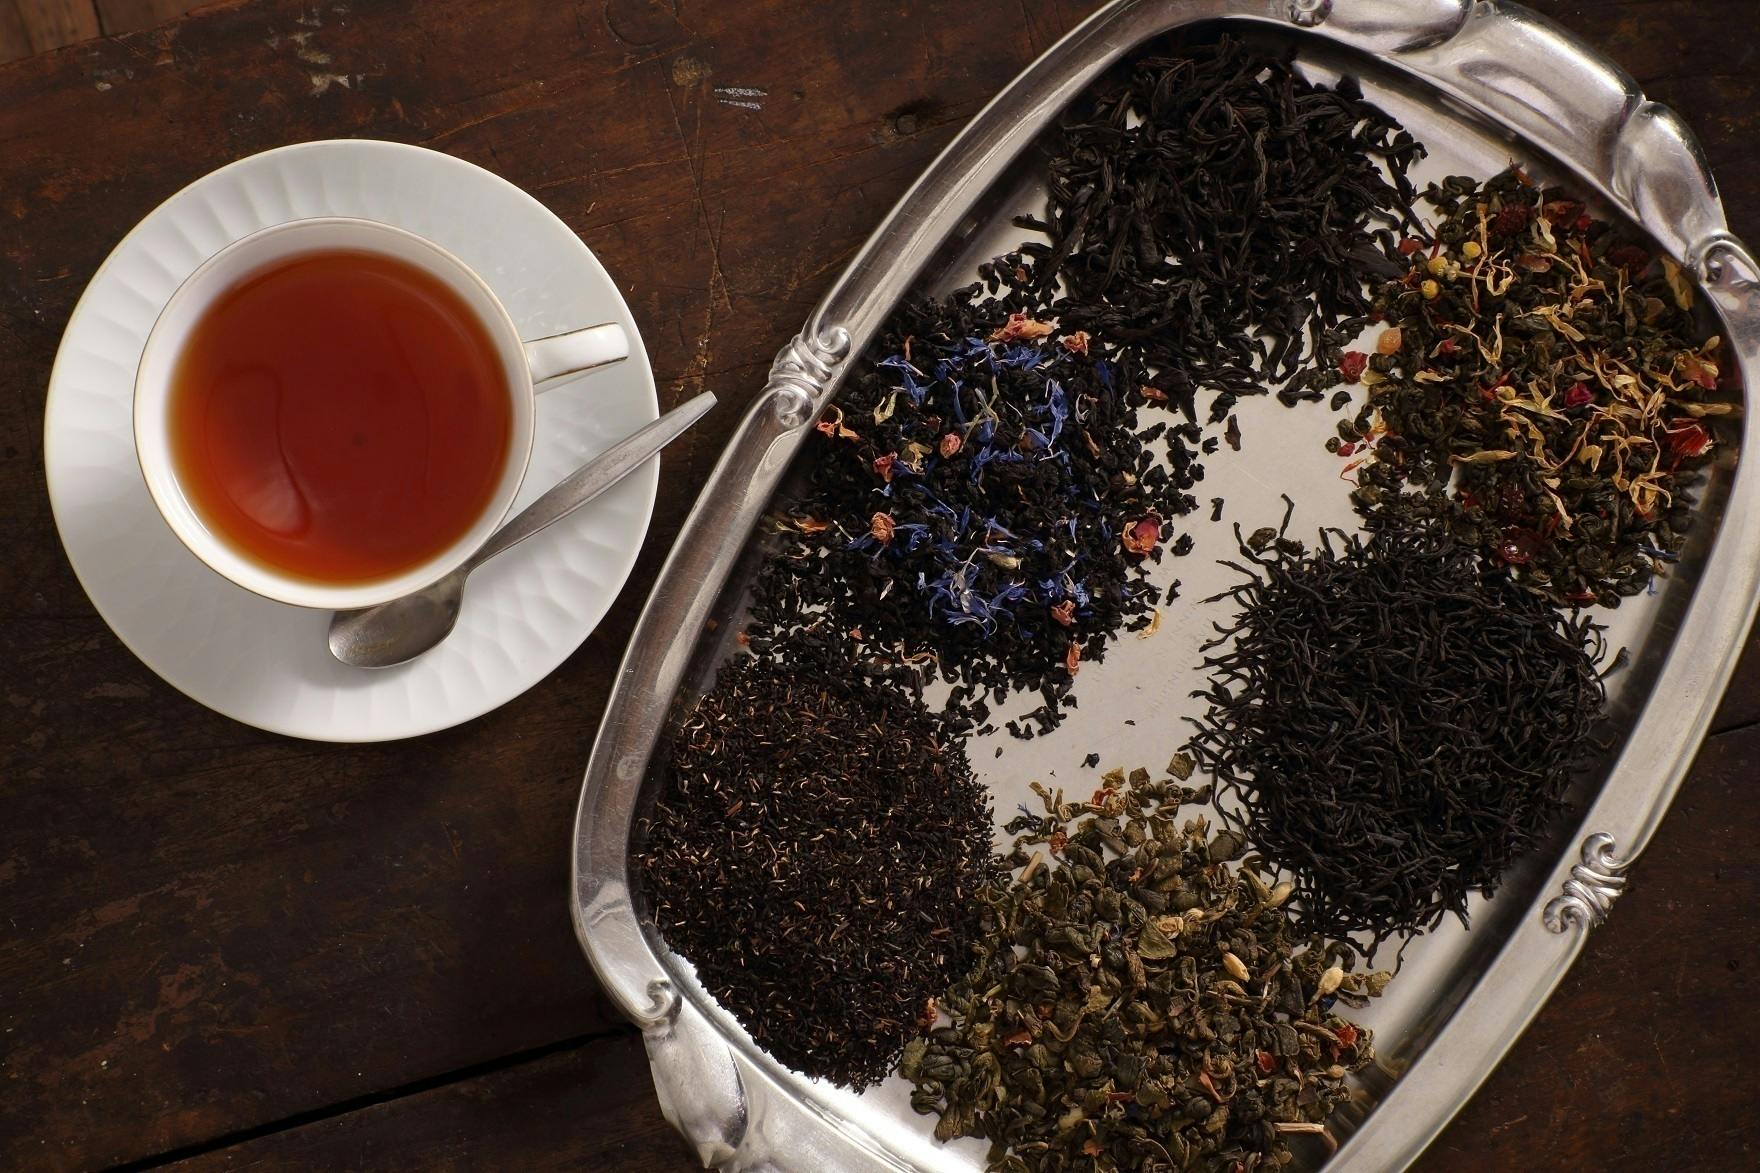 スリランカ産セイロン紅茶の生産者を守るため公平な価格で買い付け